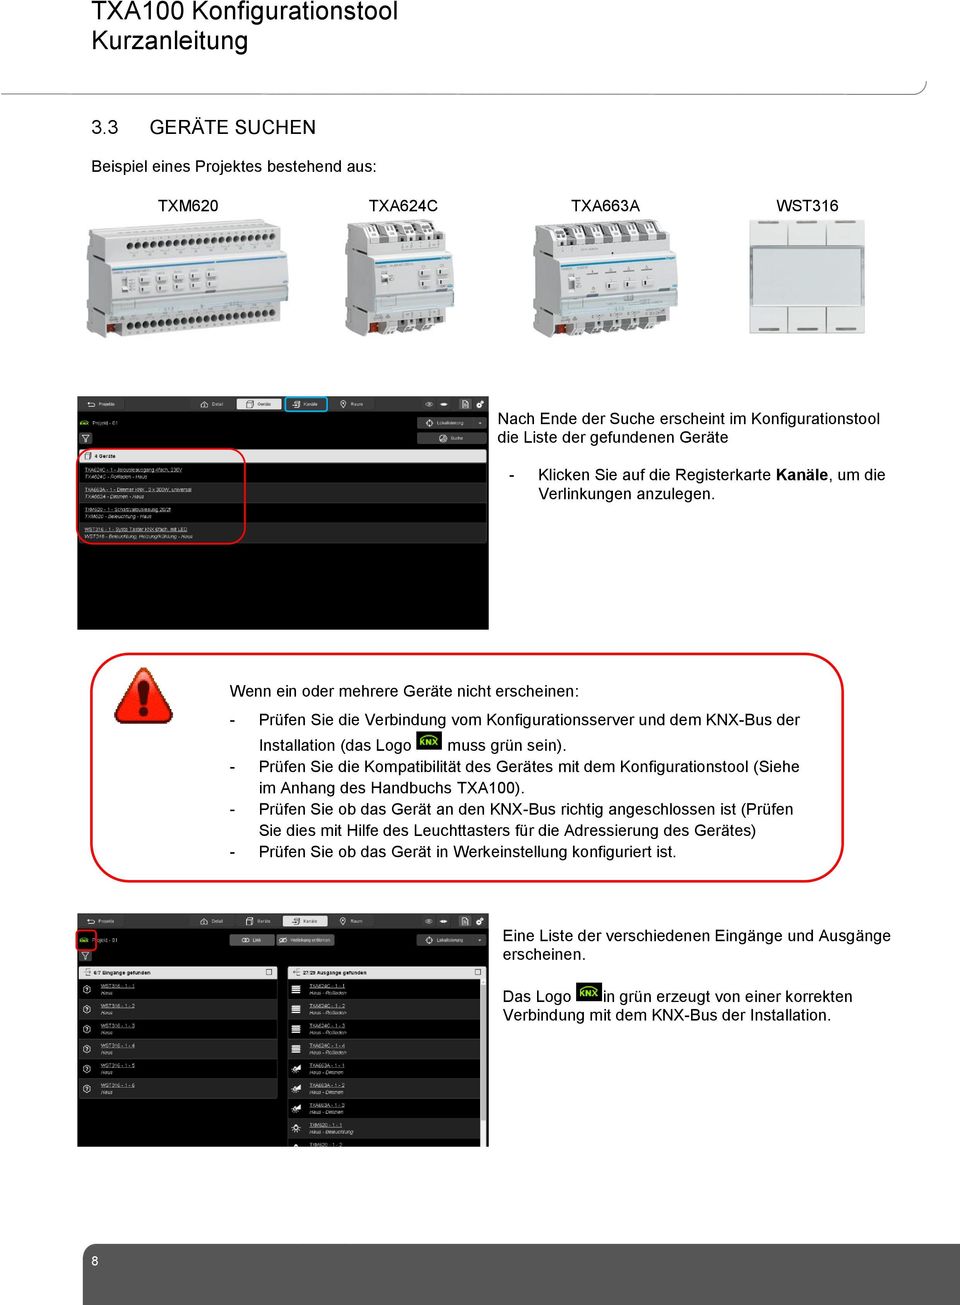 Wenn ein oder mehrere Geräte nicht erscheinen: - Prüfen Sie die Verbindung vom Konfigurationsserver und dem KNX-Bus der Installation (das Logo muss grün sein).